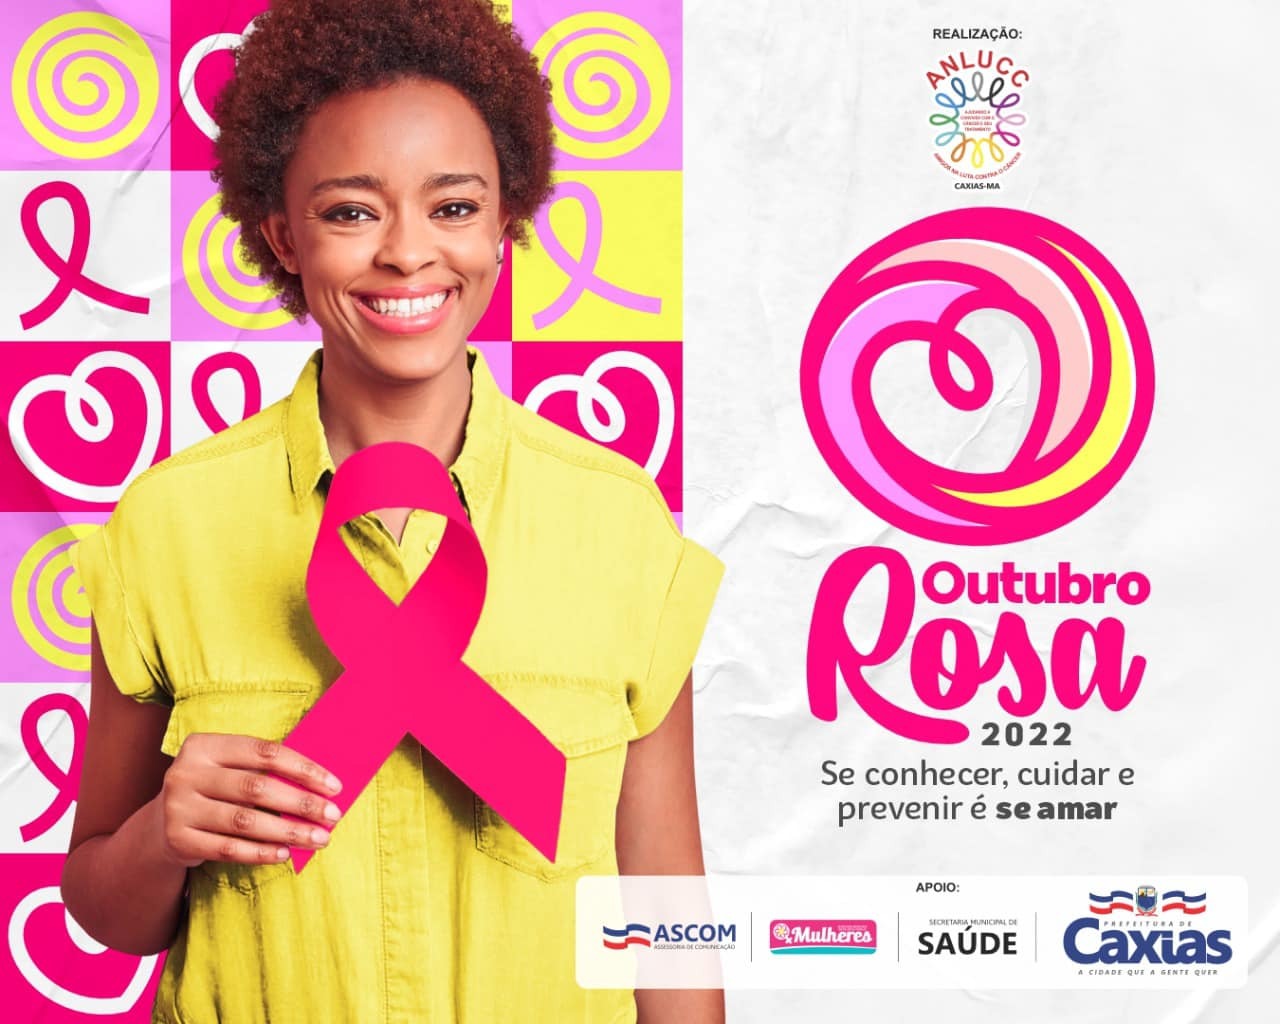 Comissão ADM Mulher Ceará Abraça o Outubro Rosa em Campanha pela  Conscientização